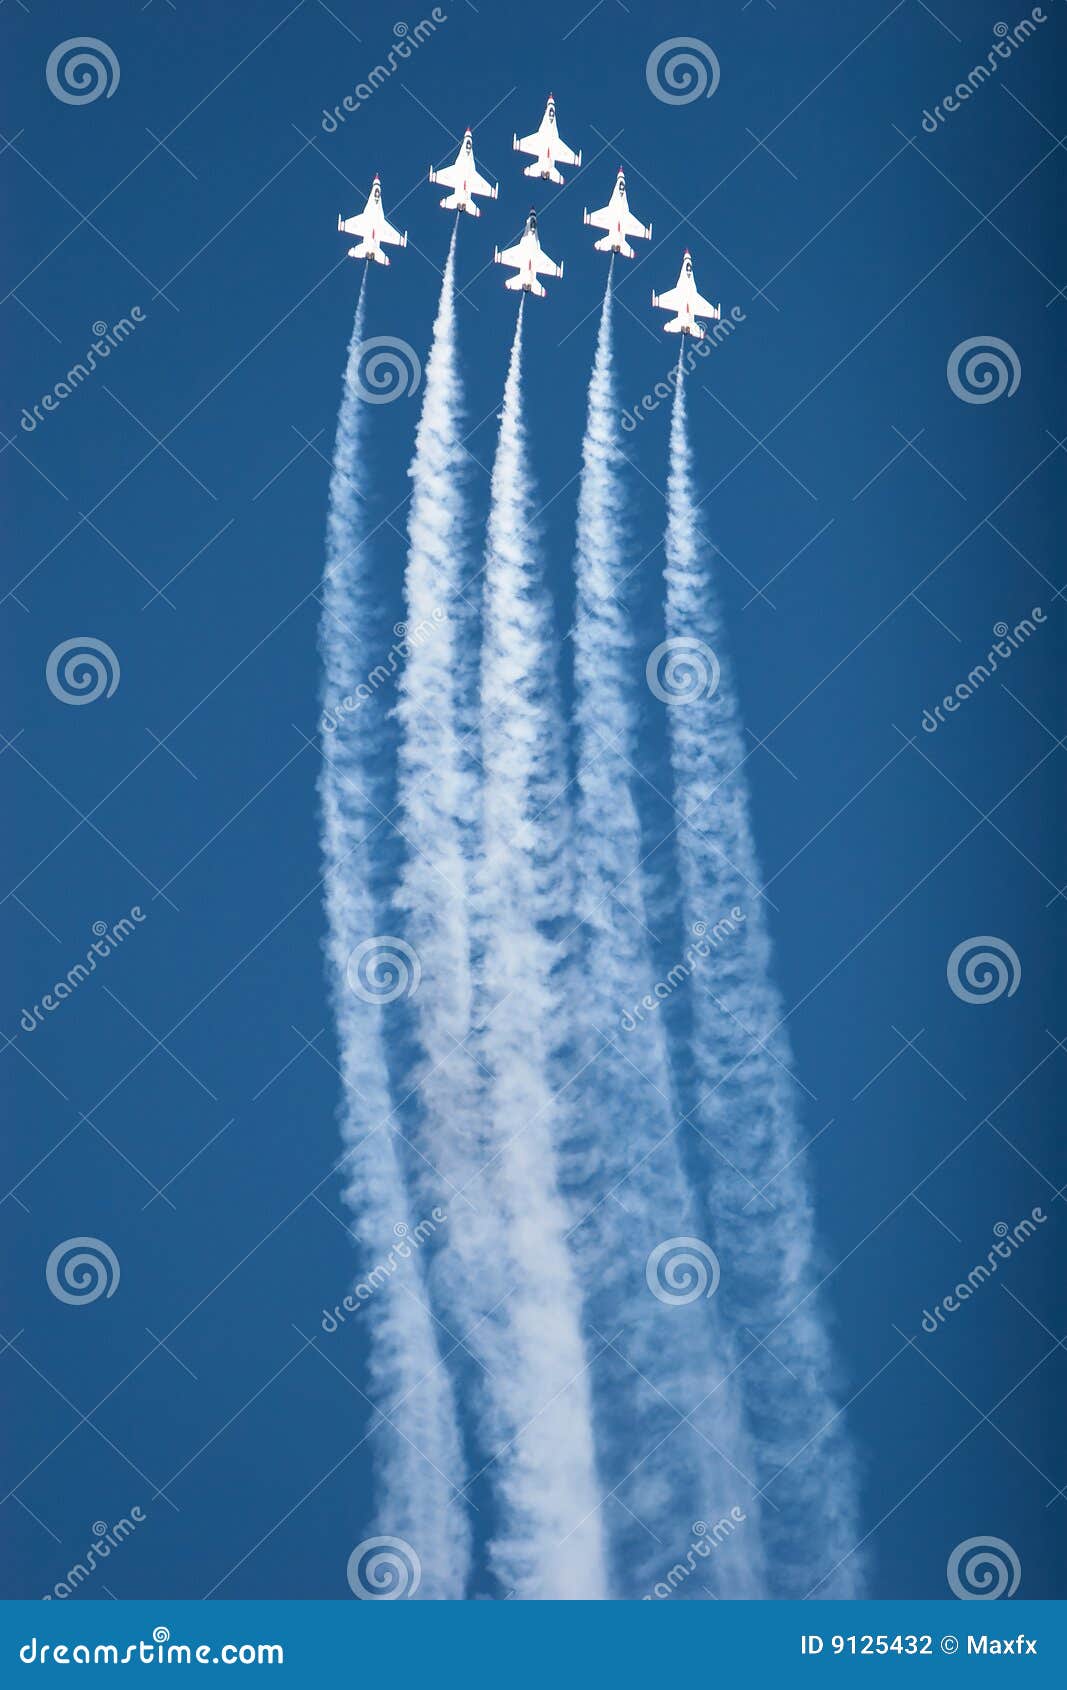 f16 thunderbird planes at airshow